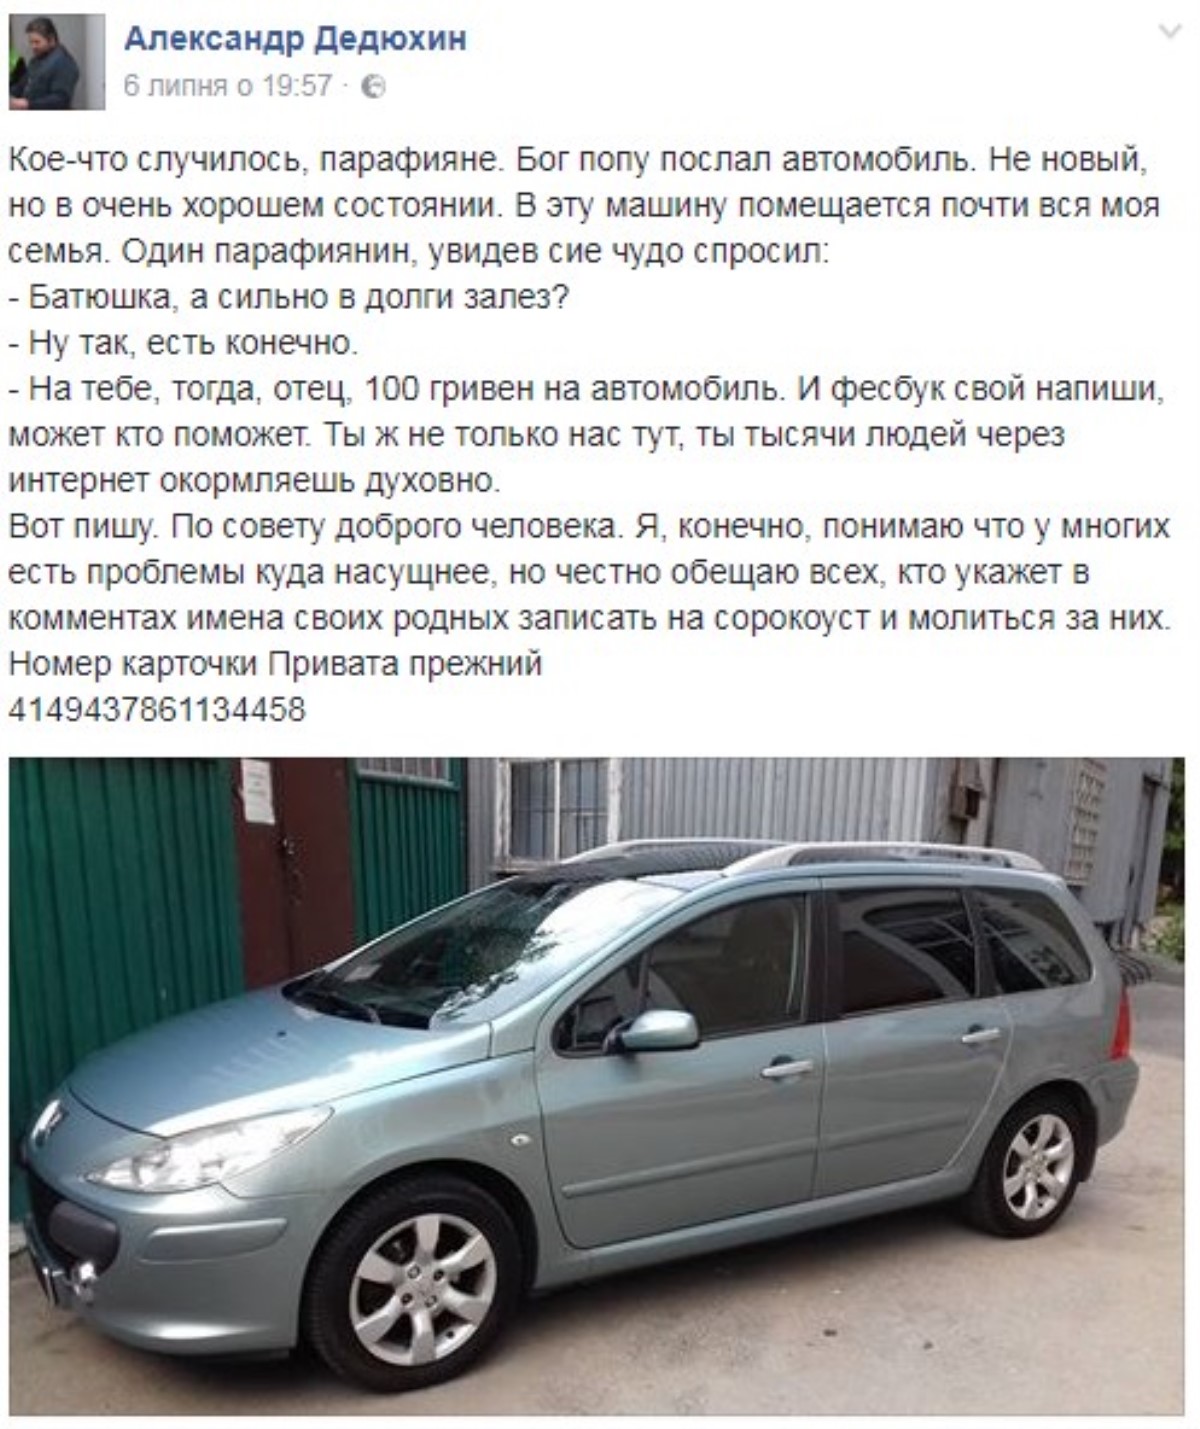 Украинский священник попросил у пользователей Facebook денег на автомобиль